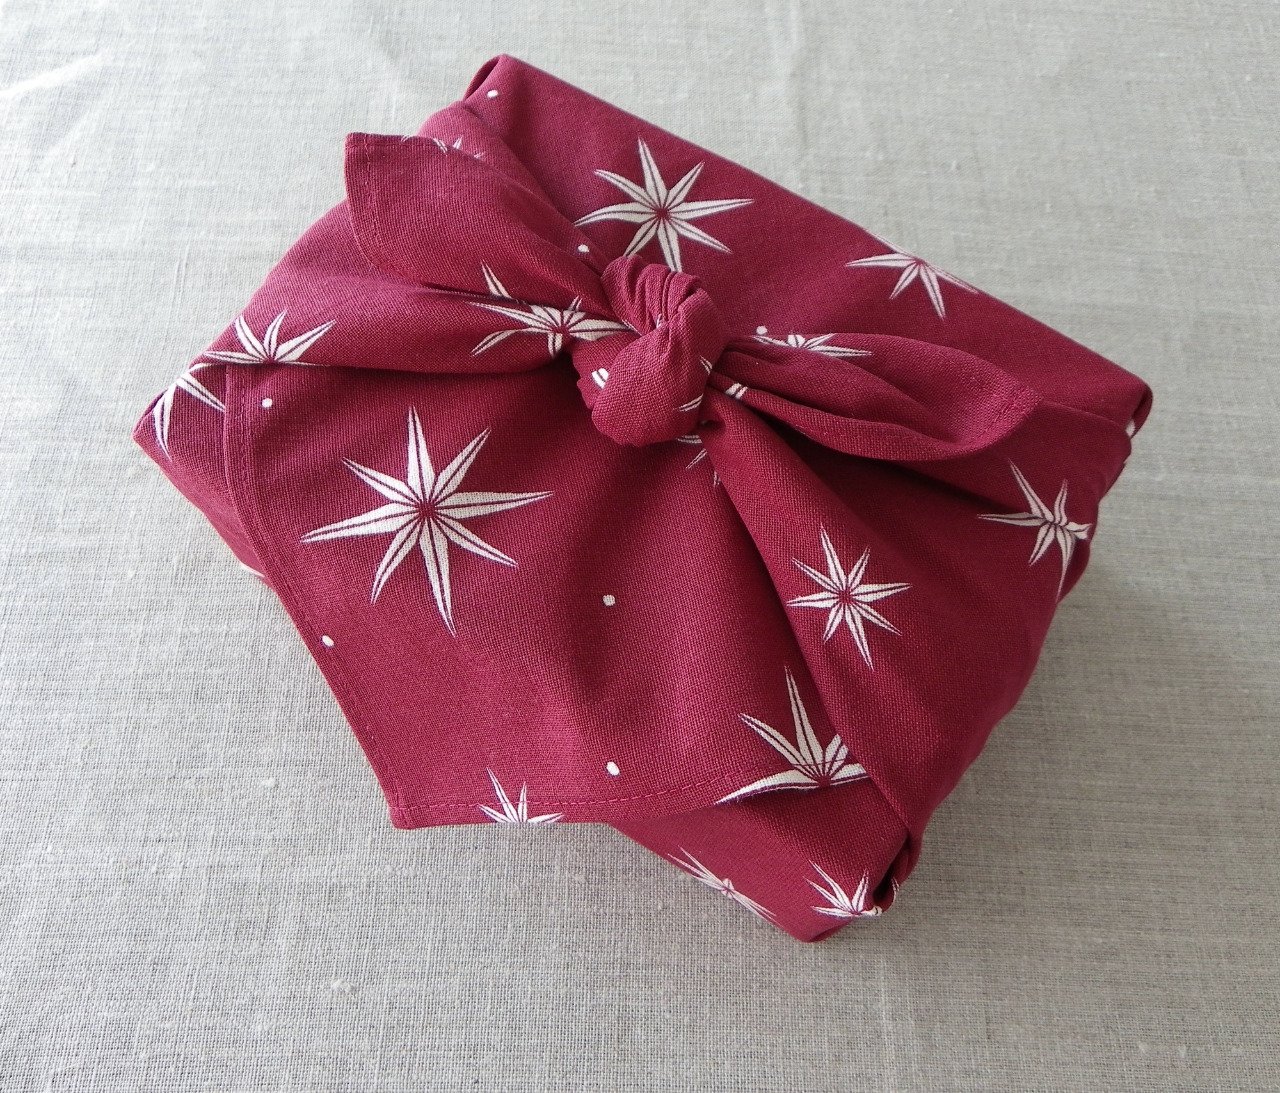 Furoshiki emballage cadeau lavable réutilisable rouge foncé bordeaux blanc étoiles tissu recyclé